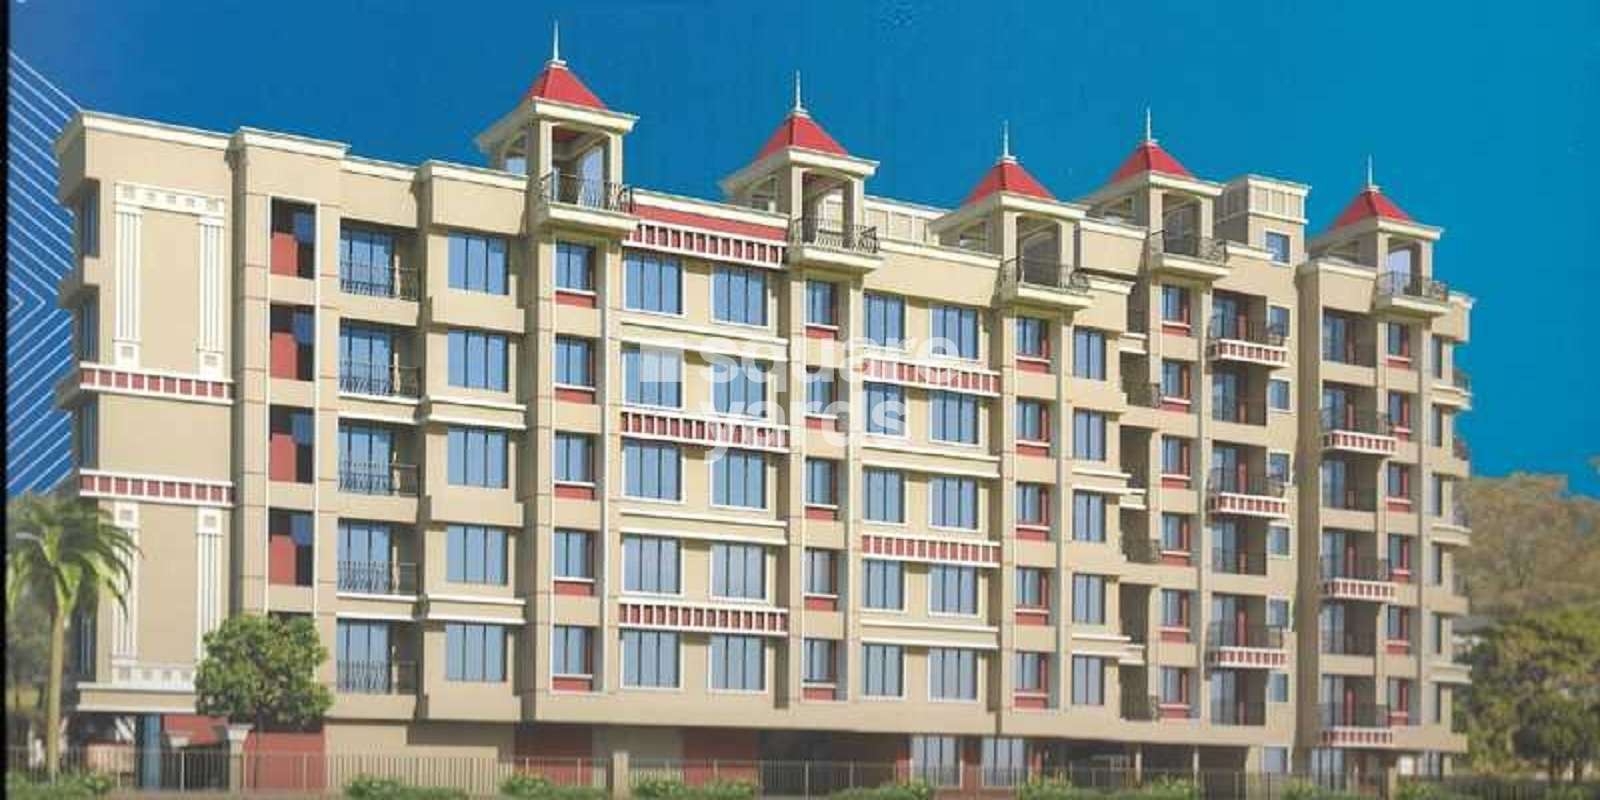 Sadguru Kripa Apartment Cover Image